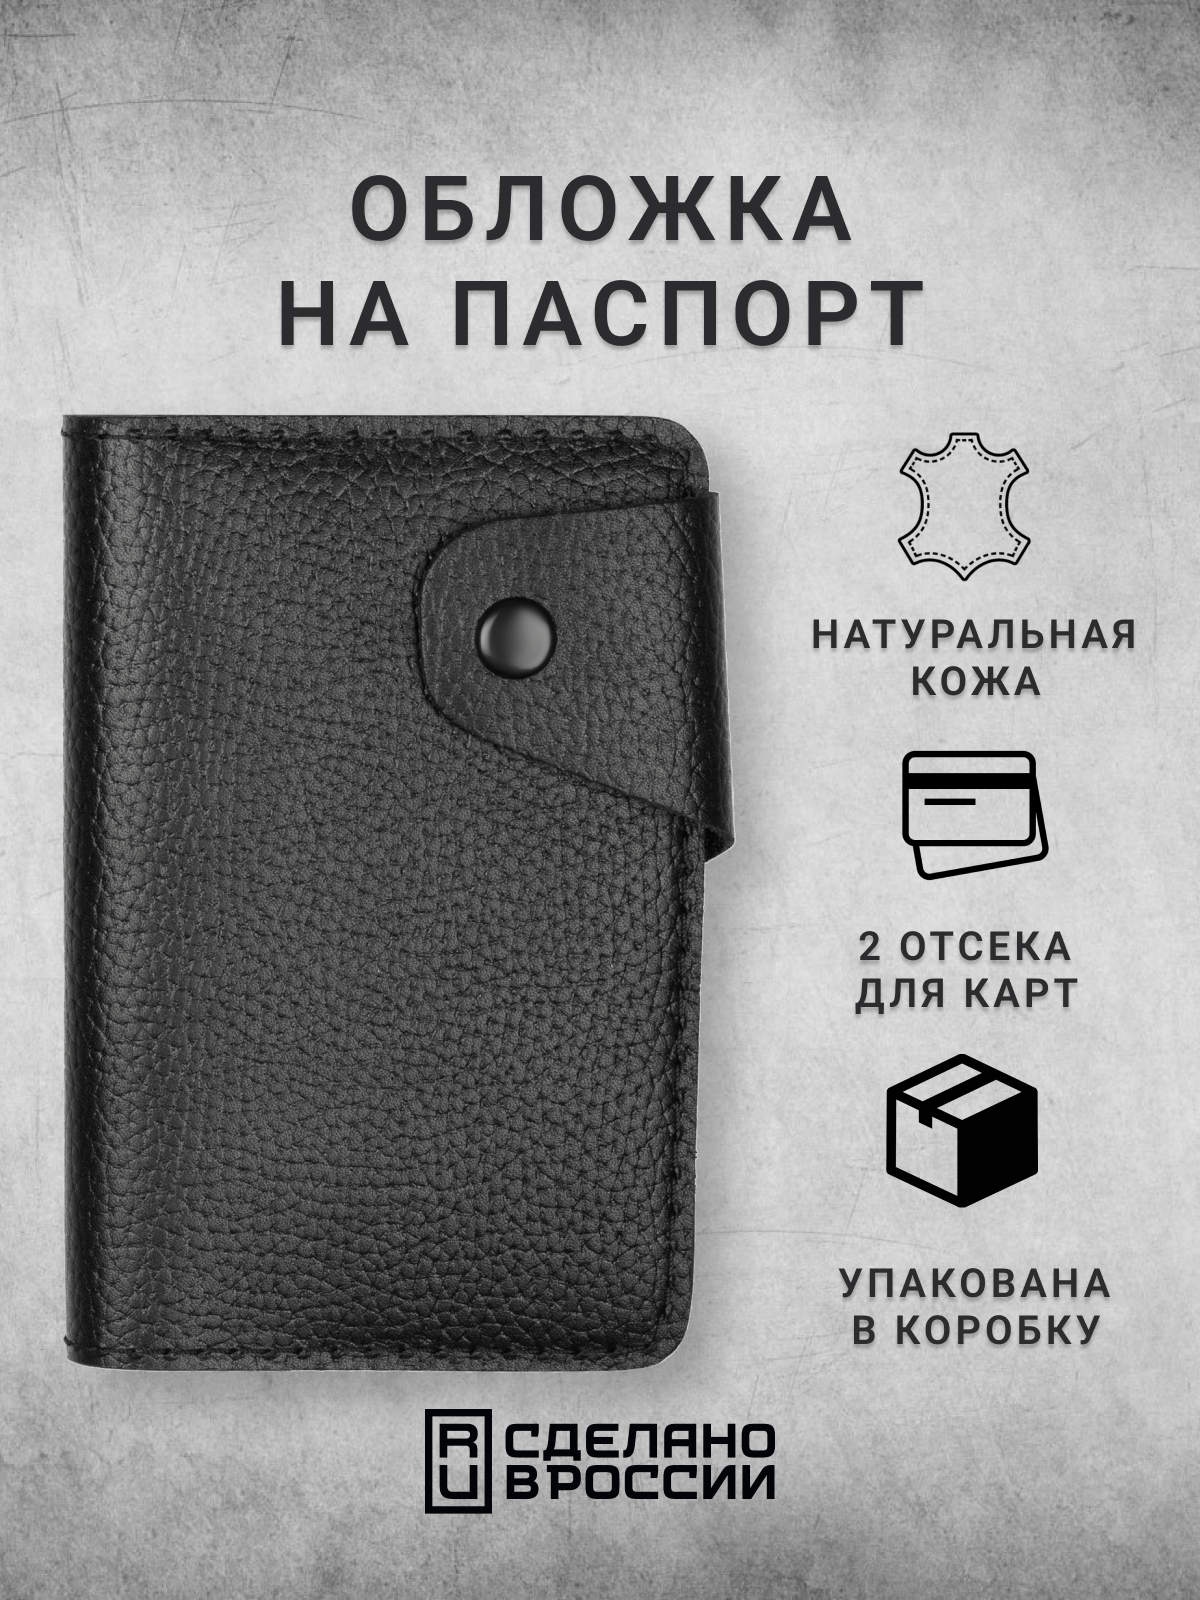 Обложка для паспорта кожZавод Кожаная обложка для паспорта и карт